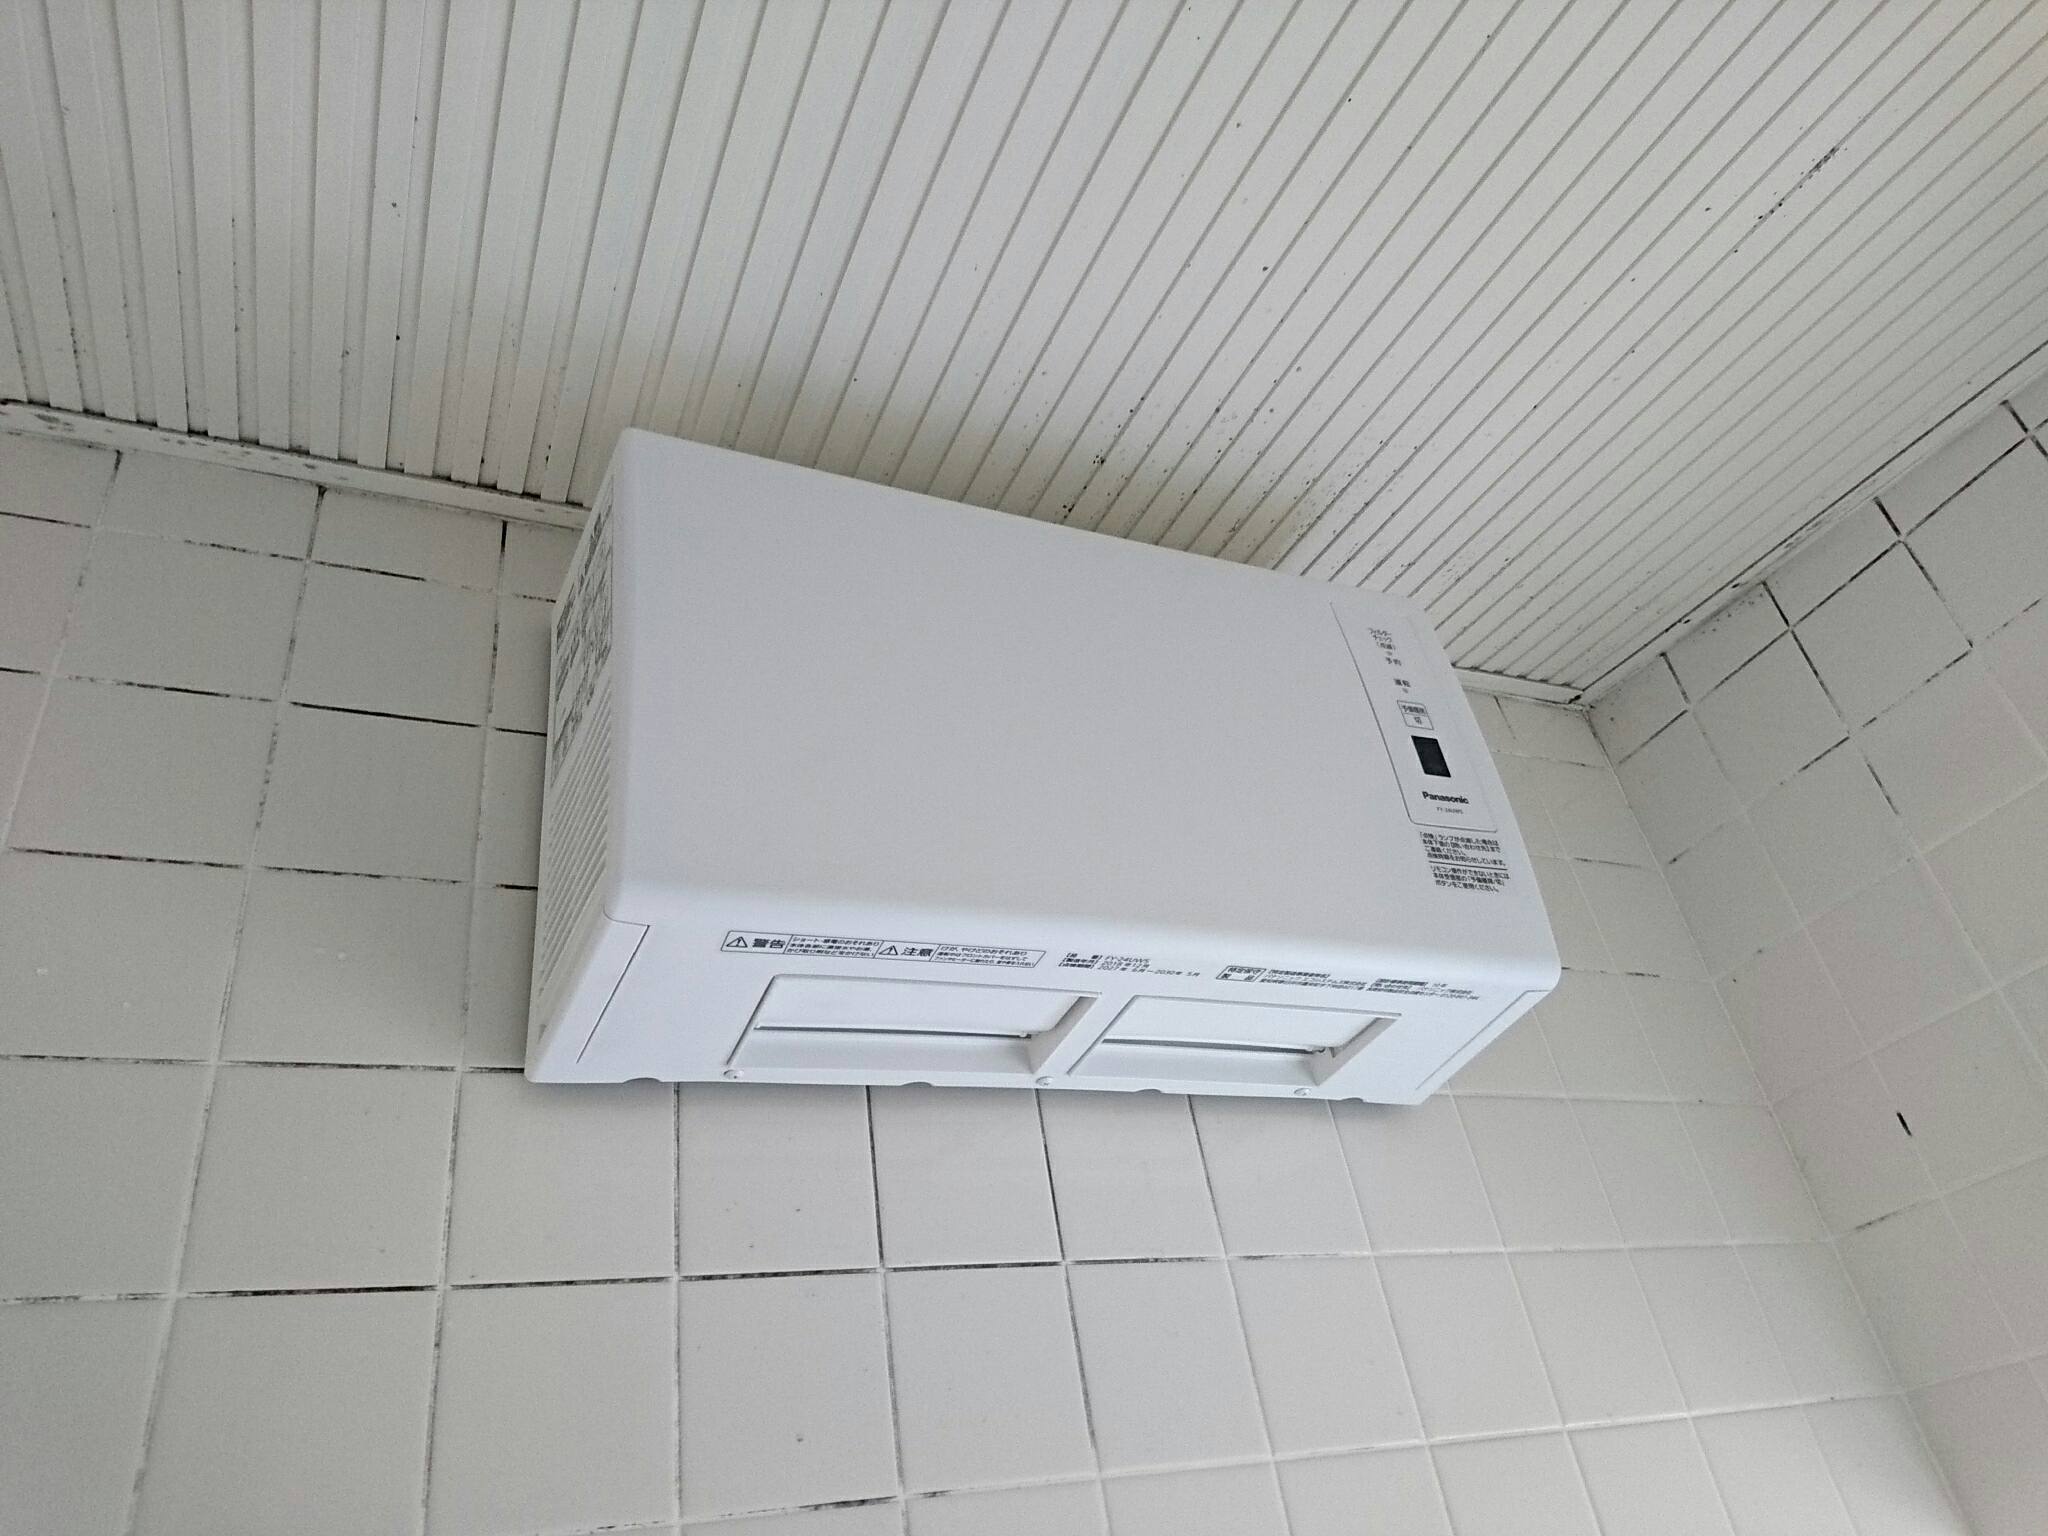 壁掛け浴室暖房機取付 パナソニック Fy 24uw5 シーン ホーム ファクトリー リフォーム日記 0